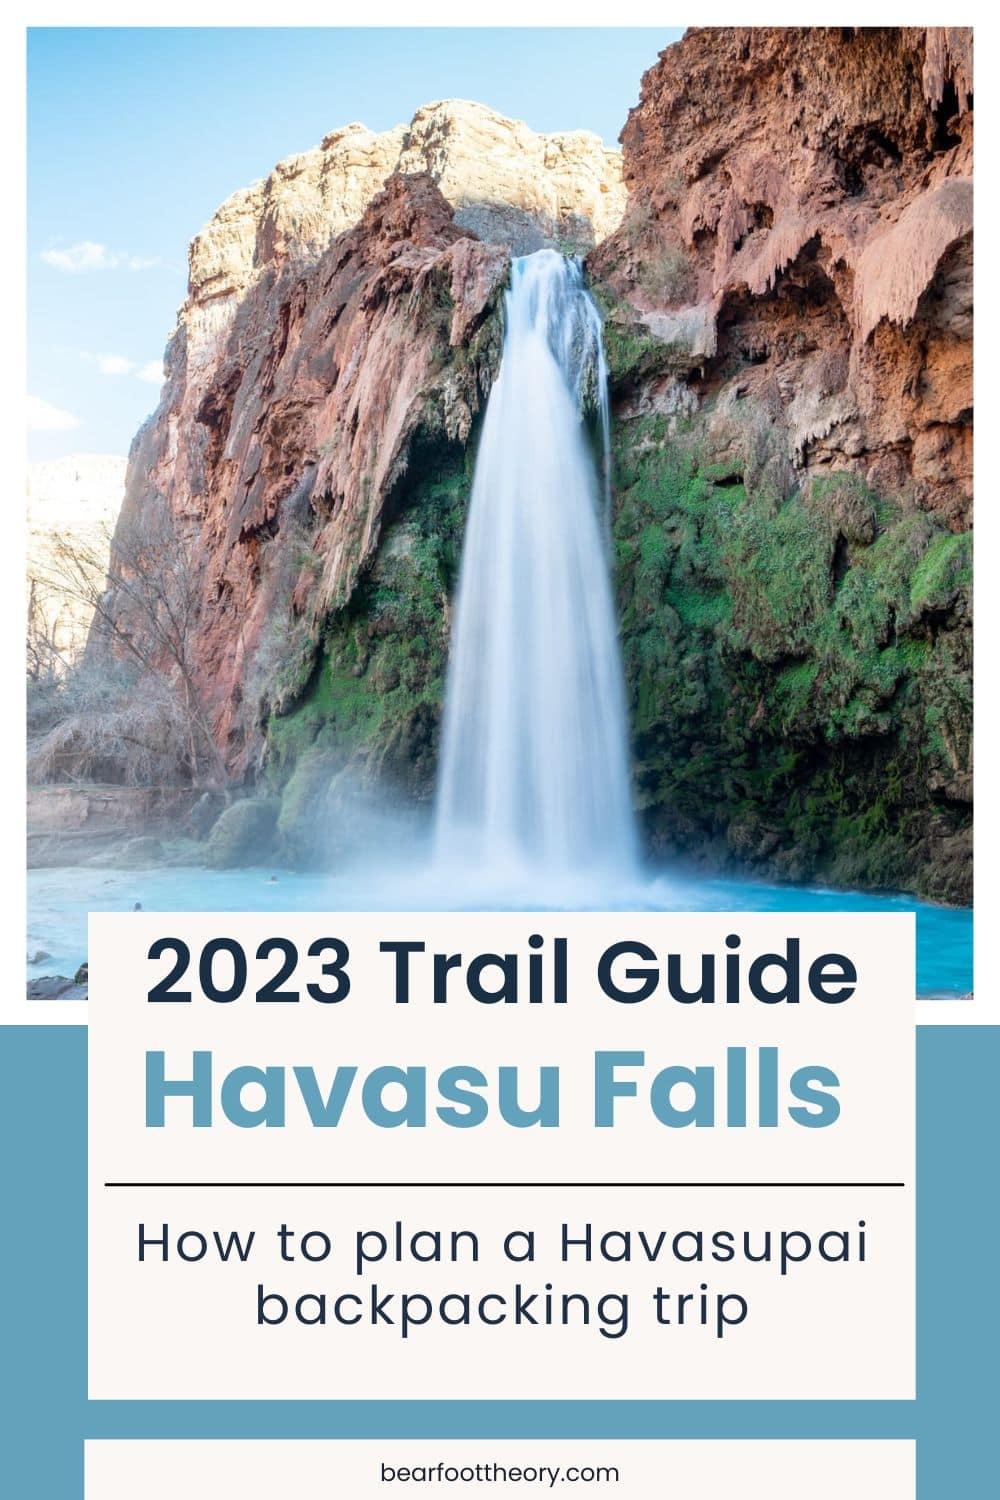 了解你需要知道的关于背包旅行去哈瓦苏派瀑布(也称为哈瓦苏瀑布)的一切。这份旅行指南详细介绍了许可证流程、露营地、如何徒步前往所有5个惊人的瀑布，以及为这次令人难以置信的冒险准备什么装备。